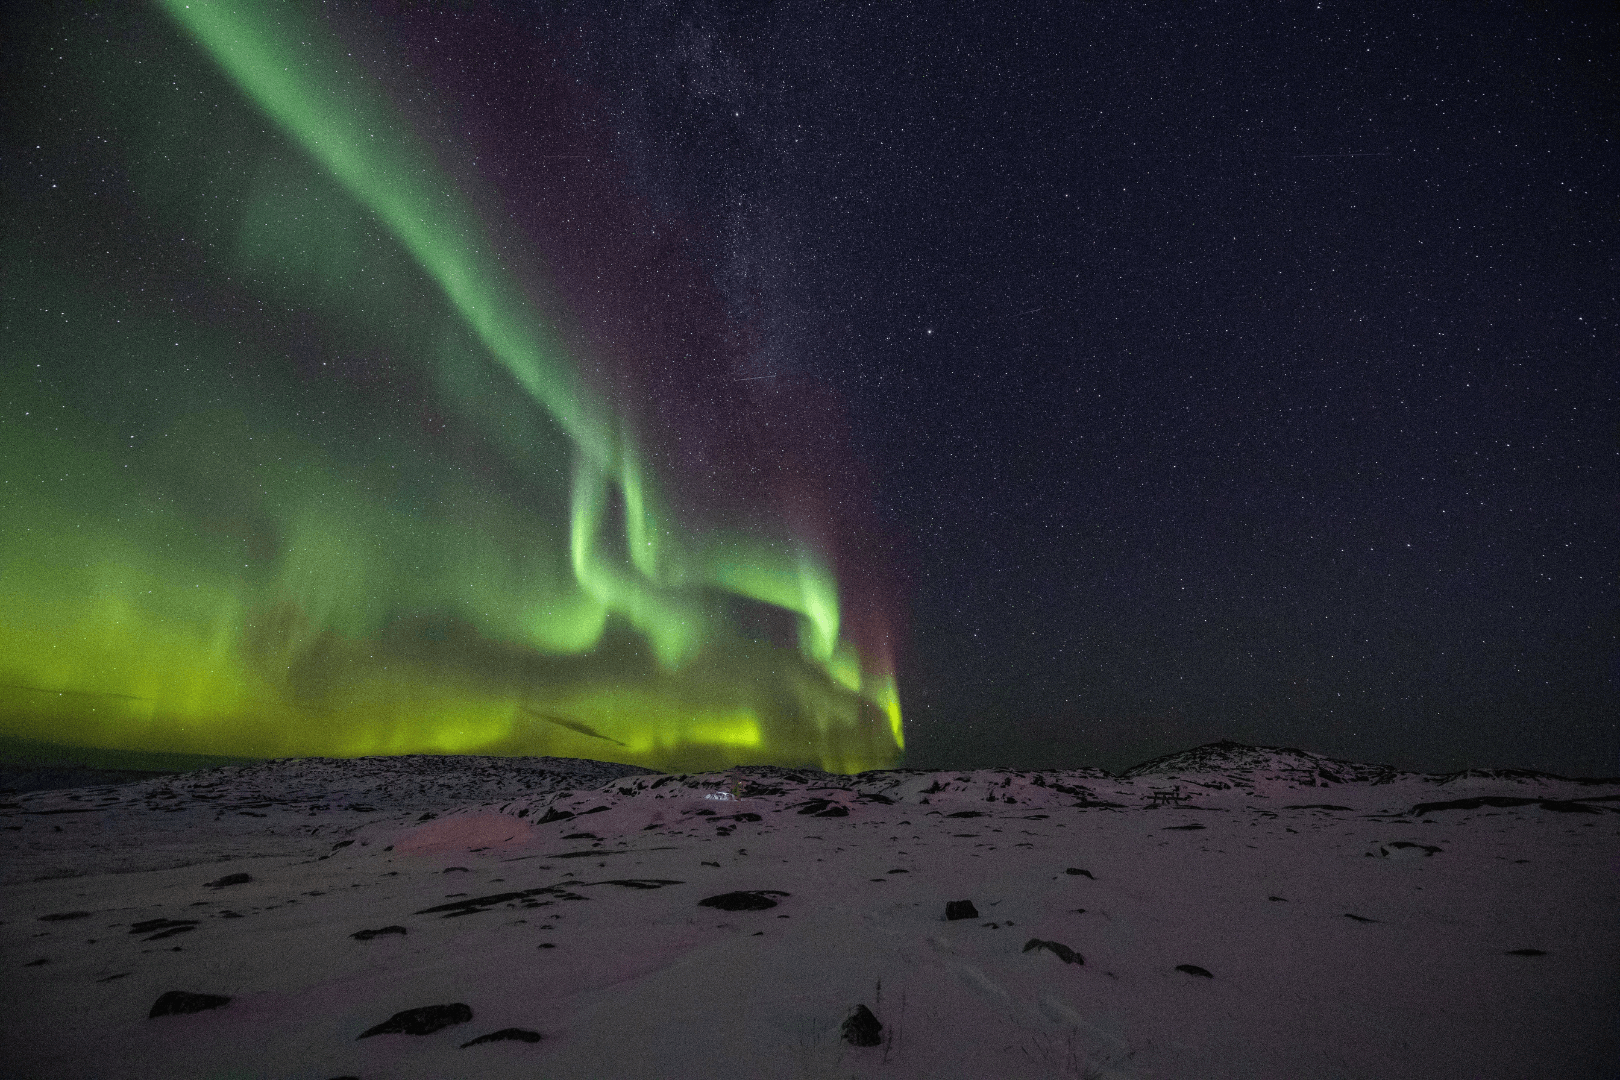 marco_brotto_groenlandia_aurora_boreal_neve-21015